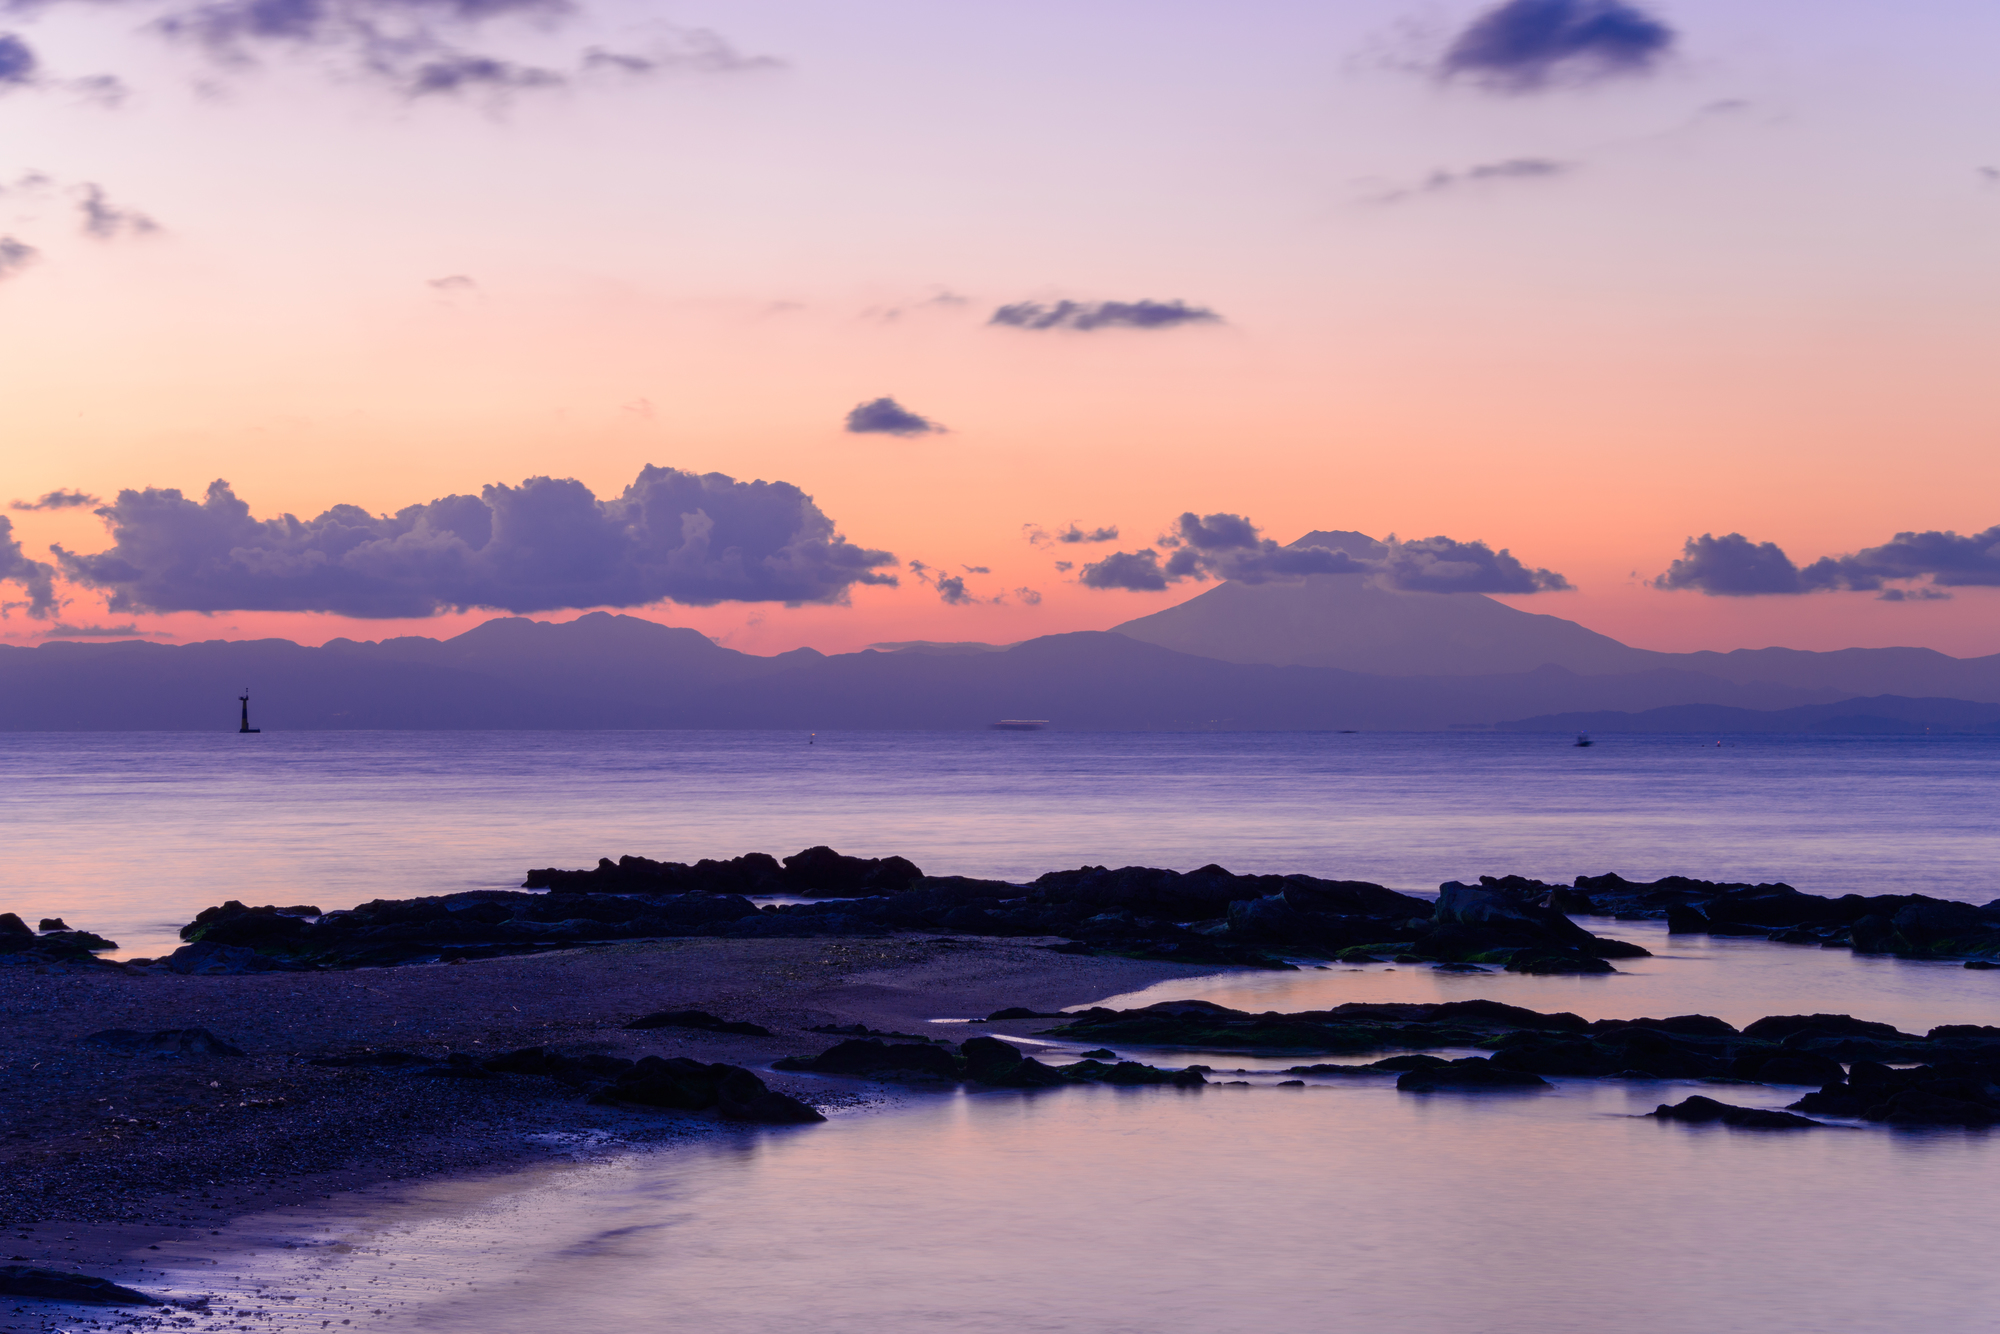 Sunset views of Mt. Fuji and Sagami Bay from Kanagawa's top 50 scenic spots